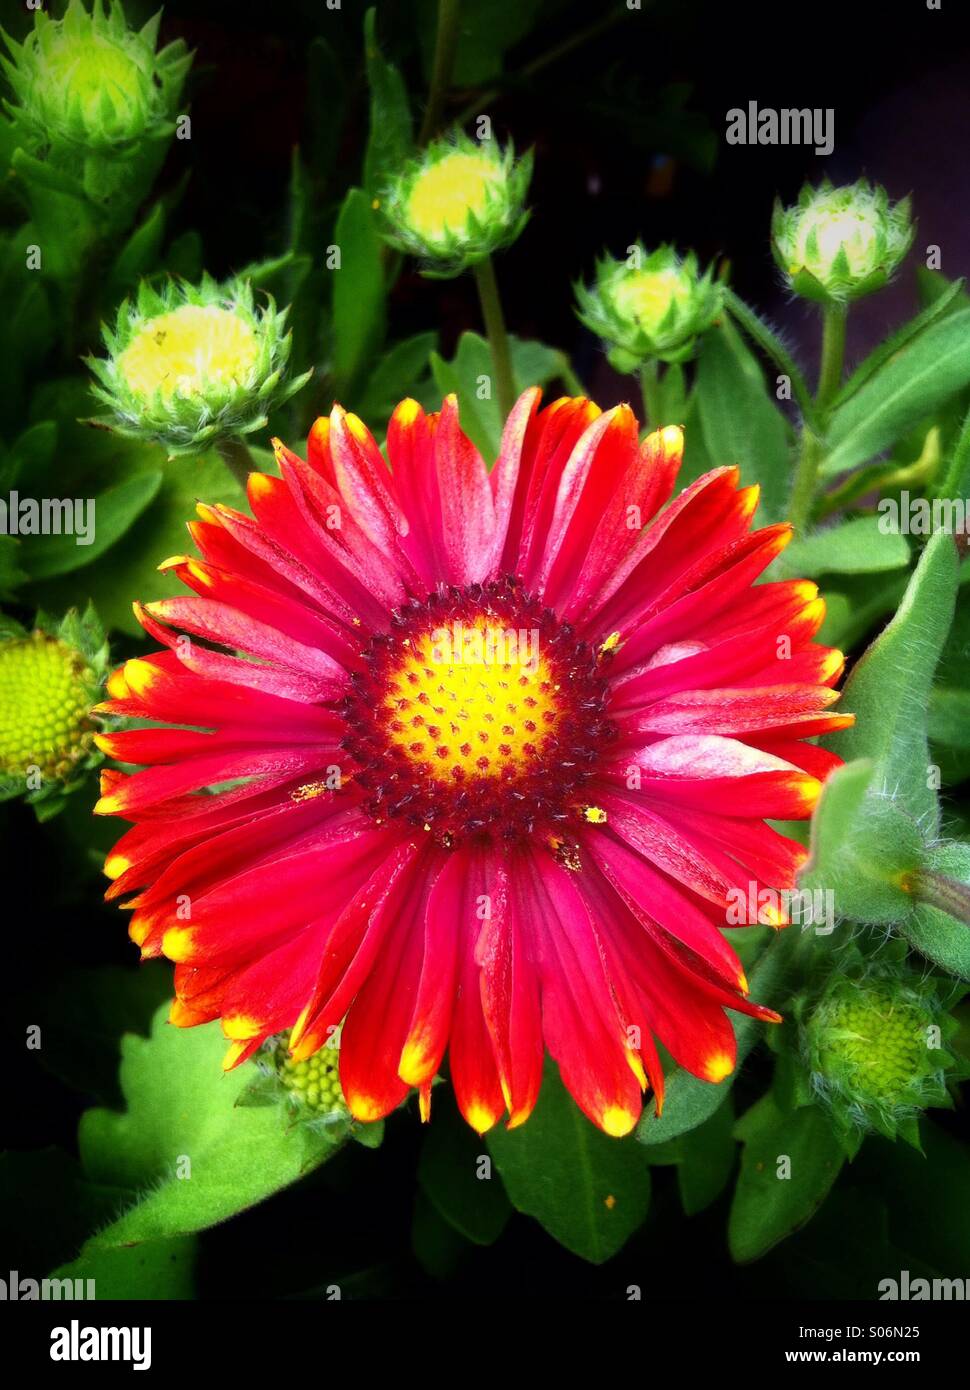 Red gaillardia flower Stock Photo